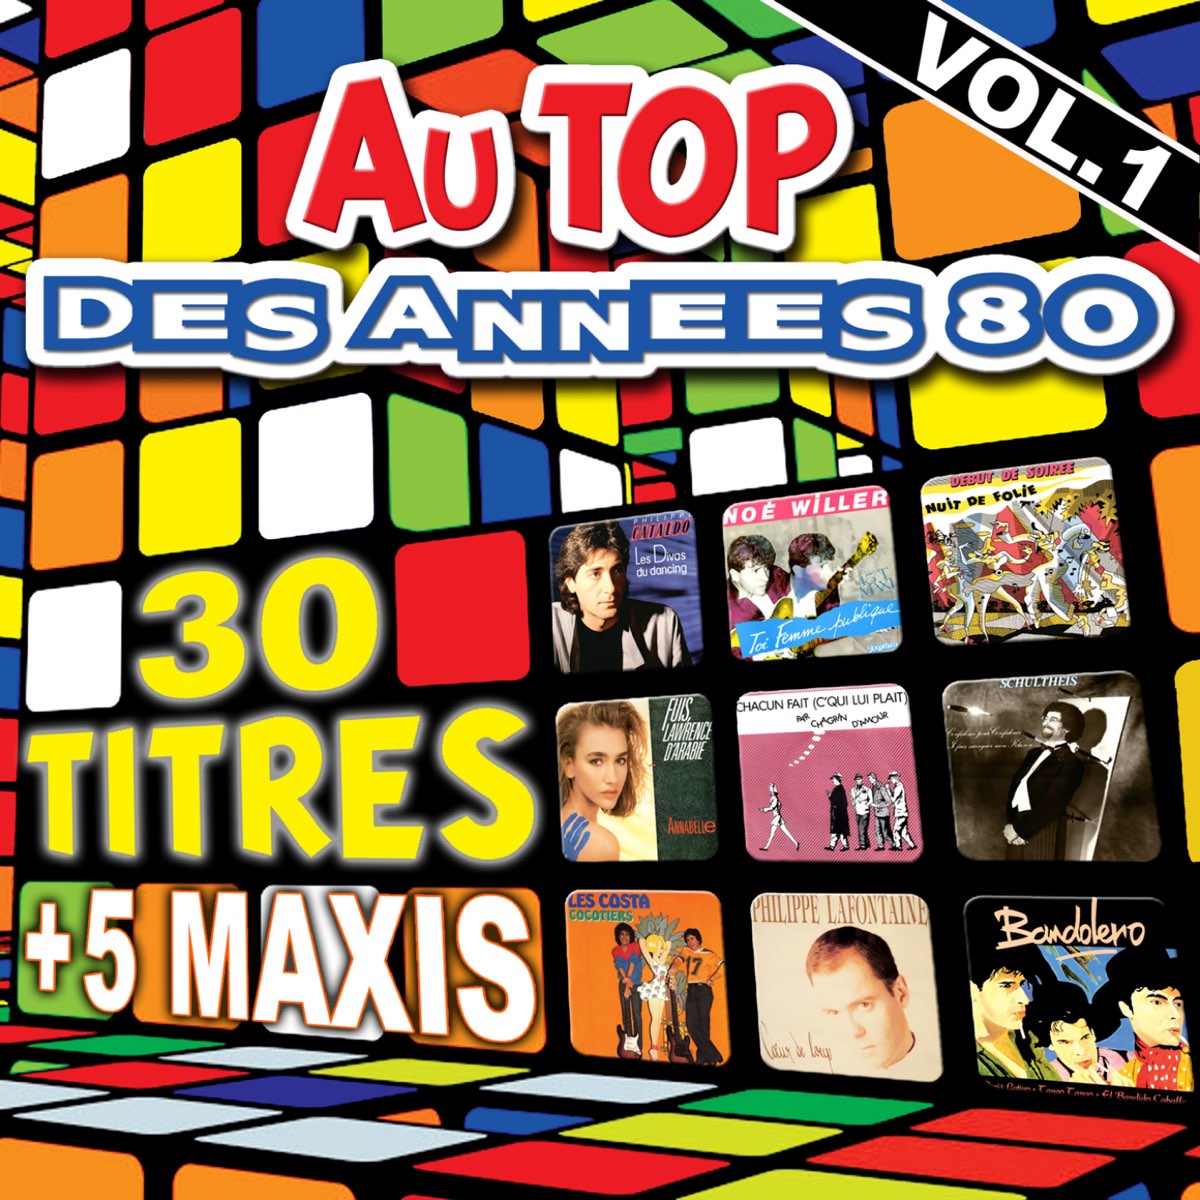 Au top des années 80, Vol. 1 (30 titres + 5 maxis) - Album by